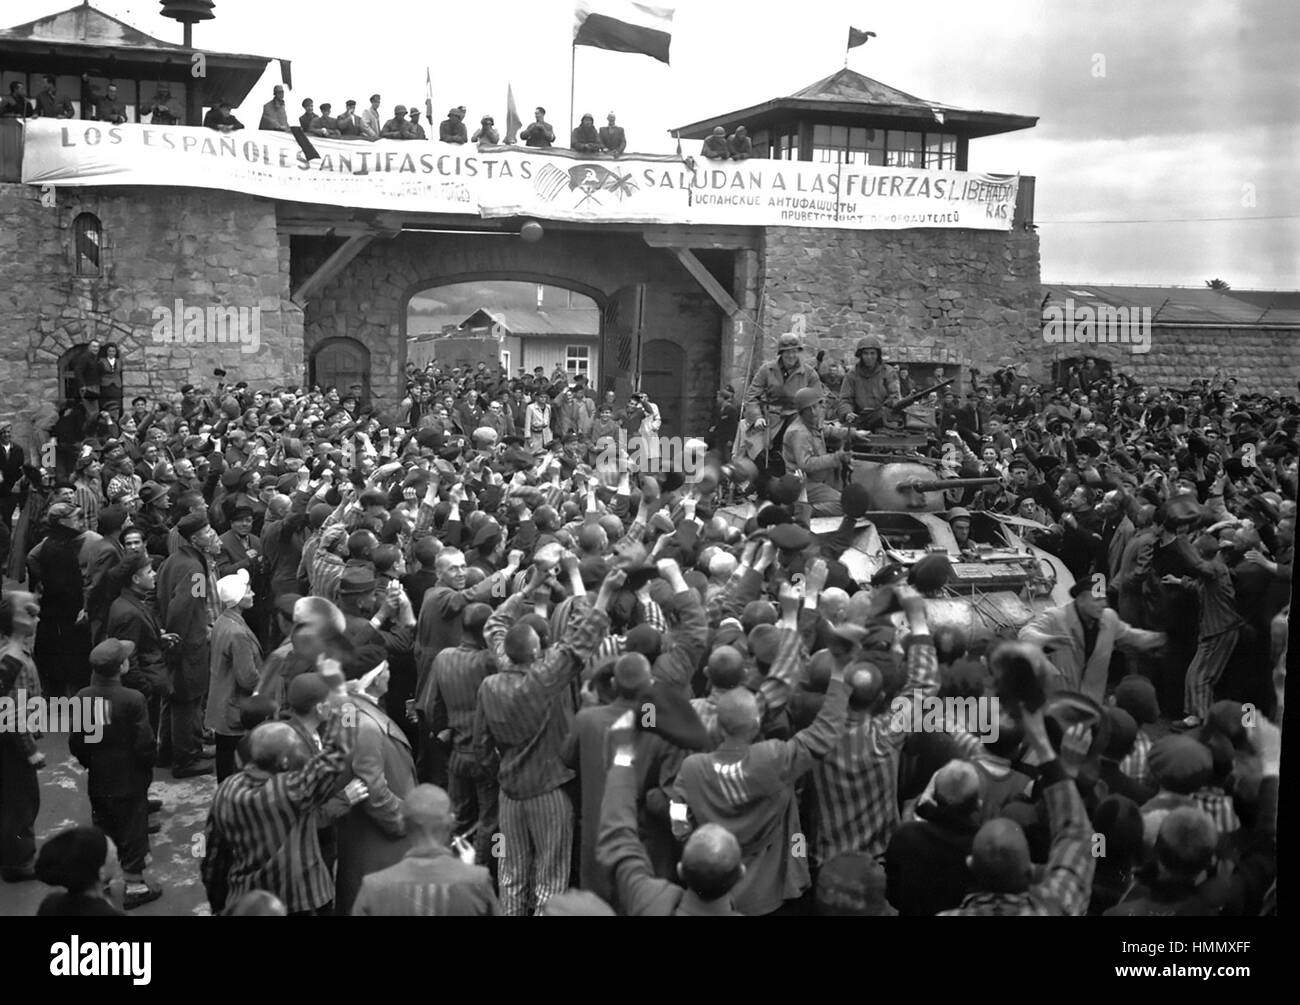 MAUTHAUSEN-GUSEN Konzentrationslager in der Nähe von Linz, Österreich. Befreite Gefangenen willkommen Panzer der USA 11. Panzerdivision am 6. Mai 1945.  Willkommen Banner wurde von spanischen Gefangenen gemacht.  Foto: Cpl Donald Ornitz / US-Beamter Stockfoto